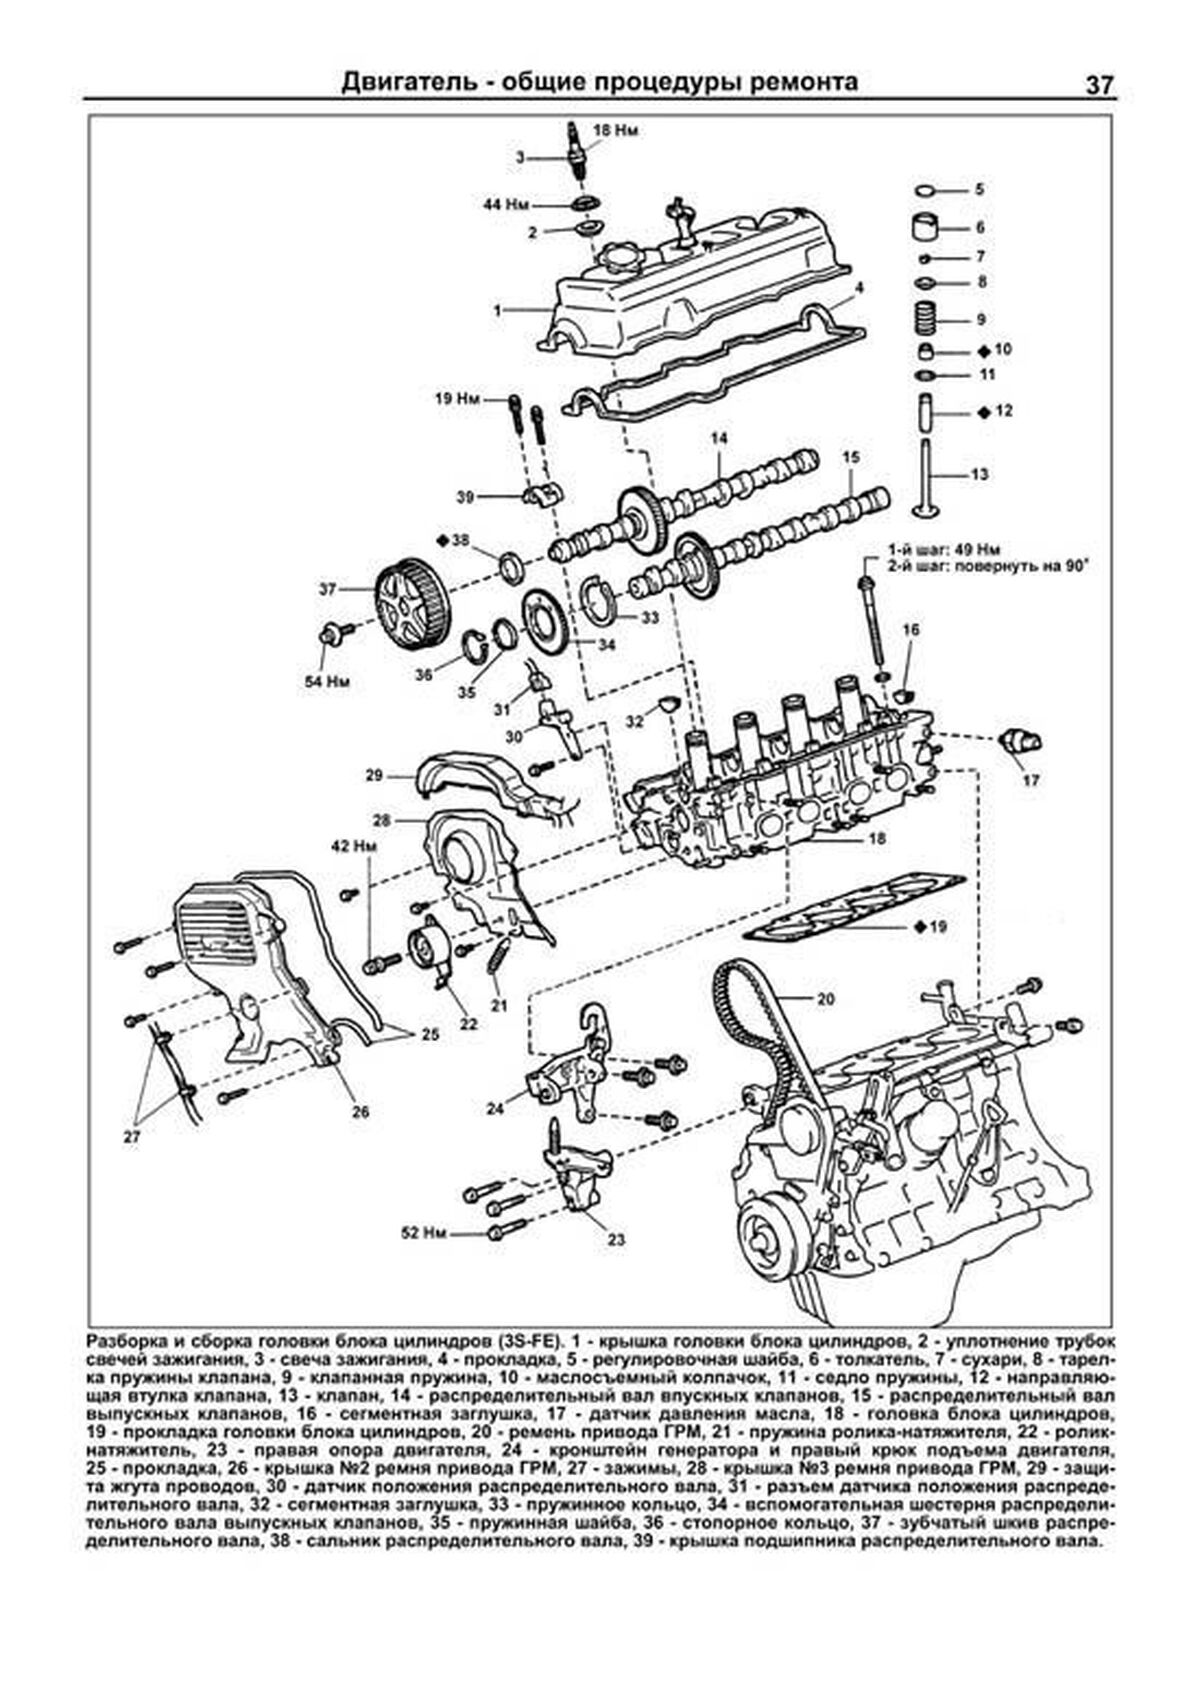 Книга: Двигатели TOYOTA 3S-FE / 3S-FSE рем., то | Легион-Aвтодата